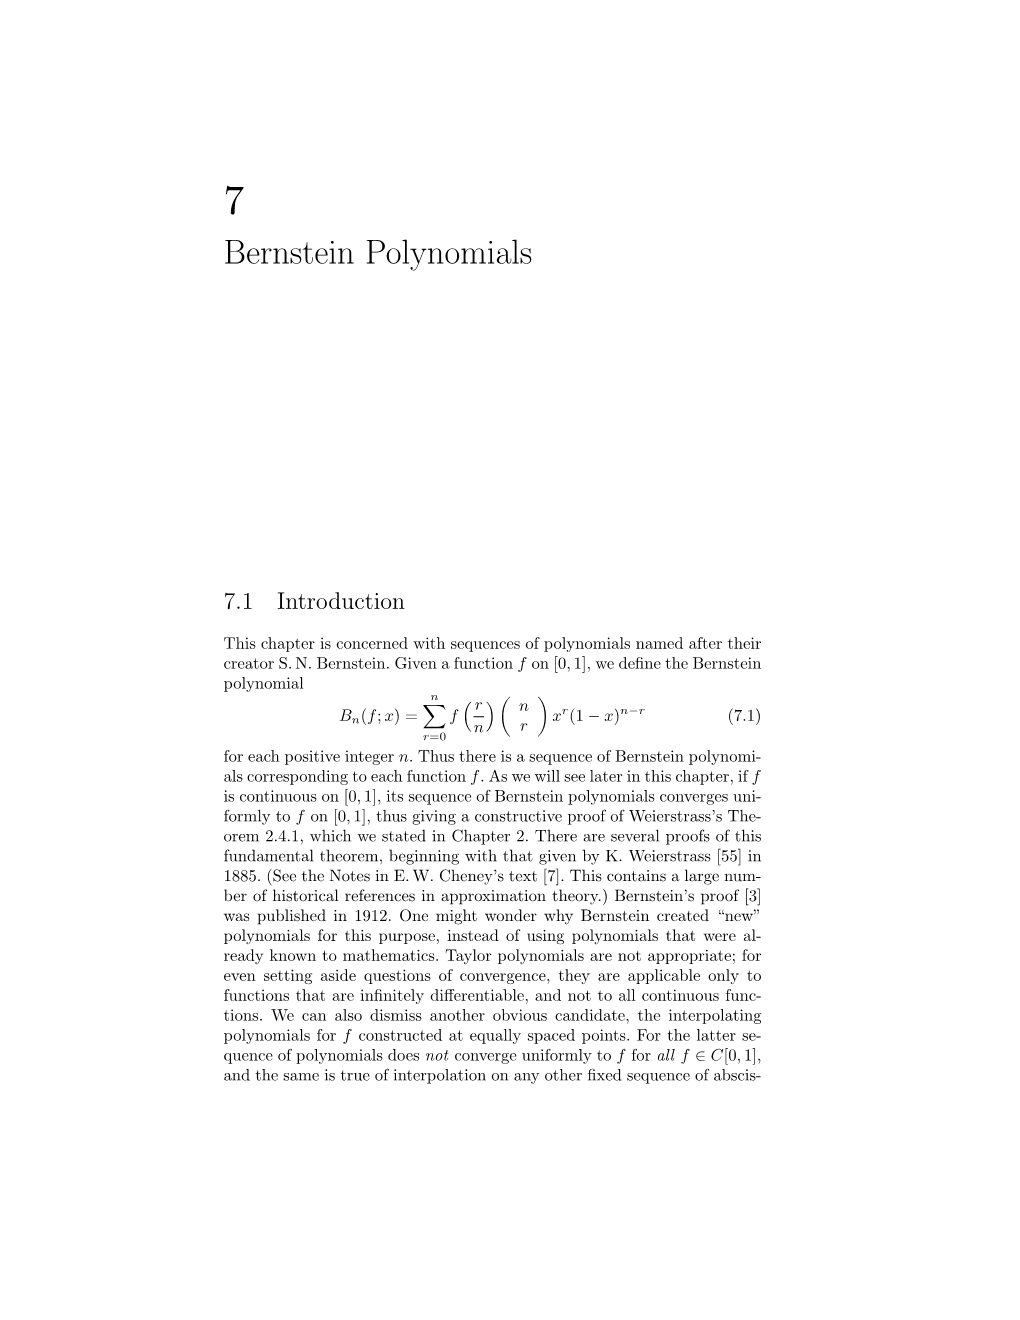 Bernstein Polynomials